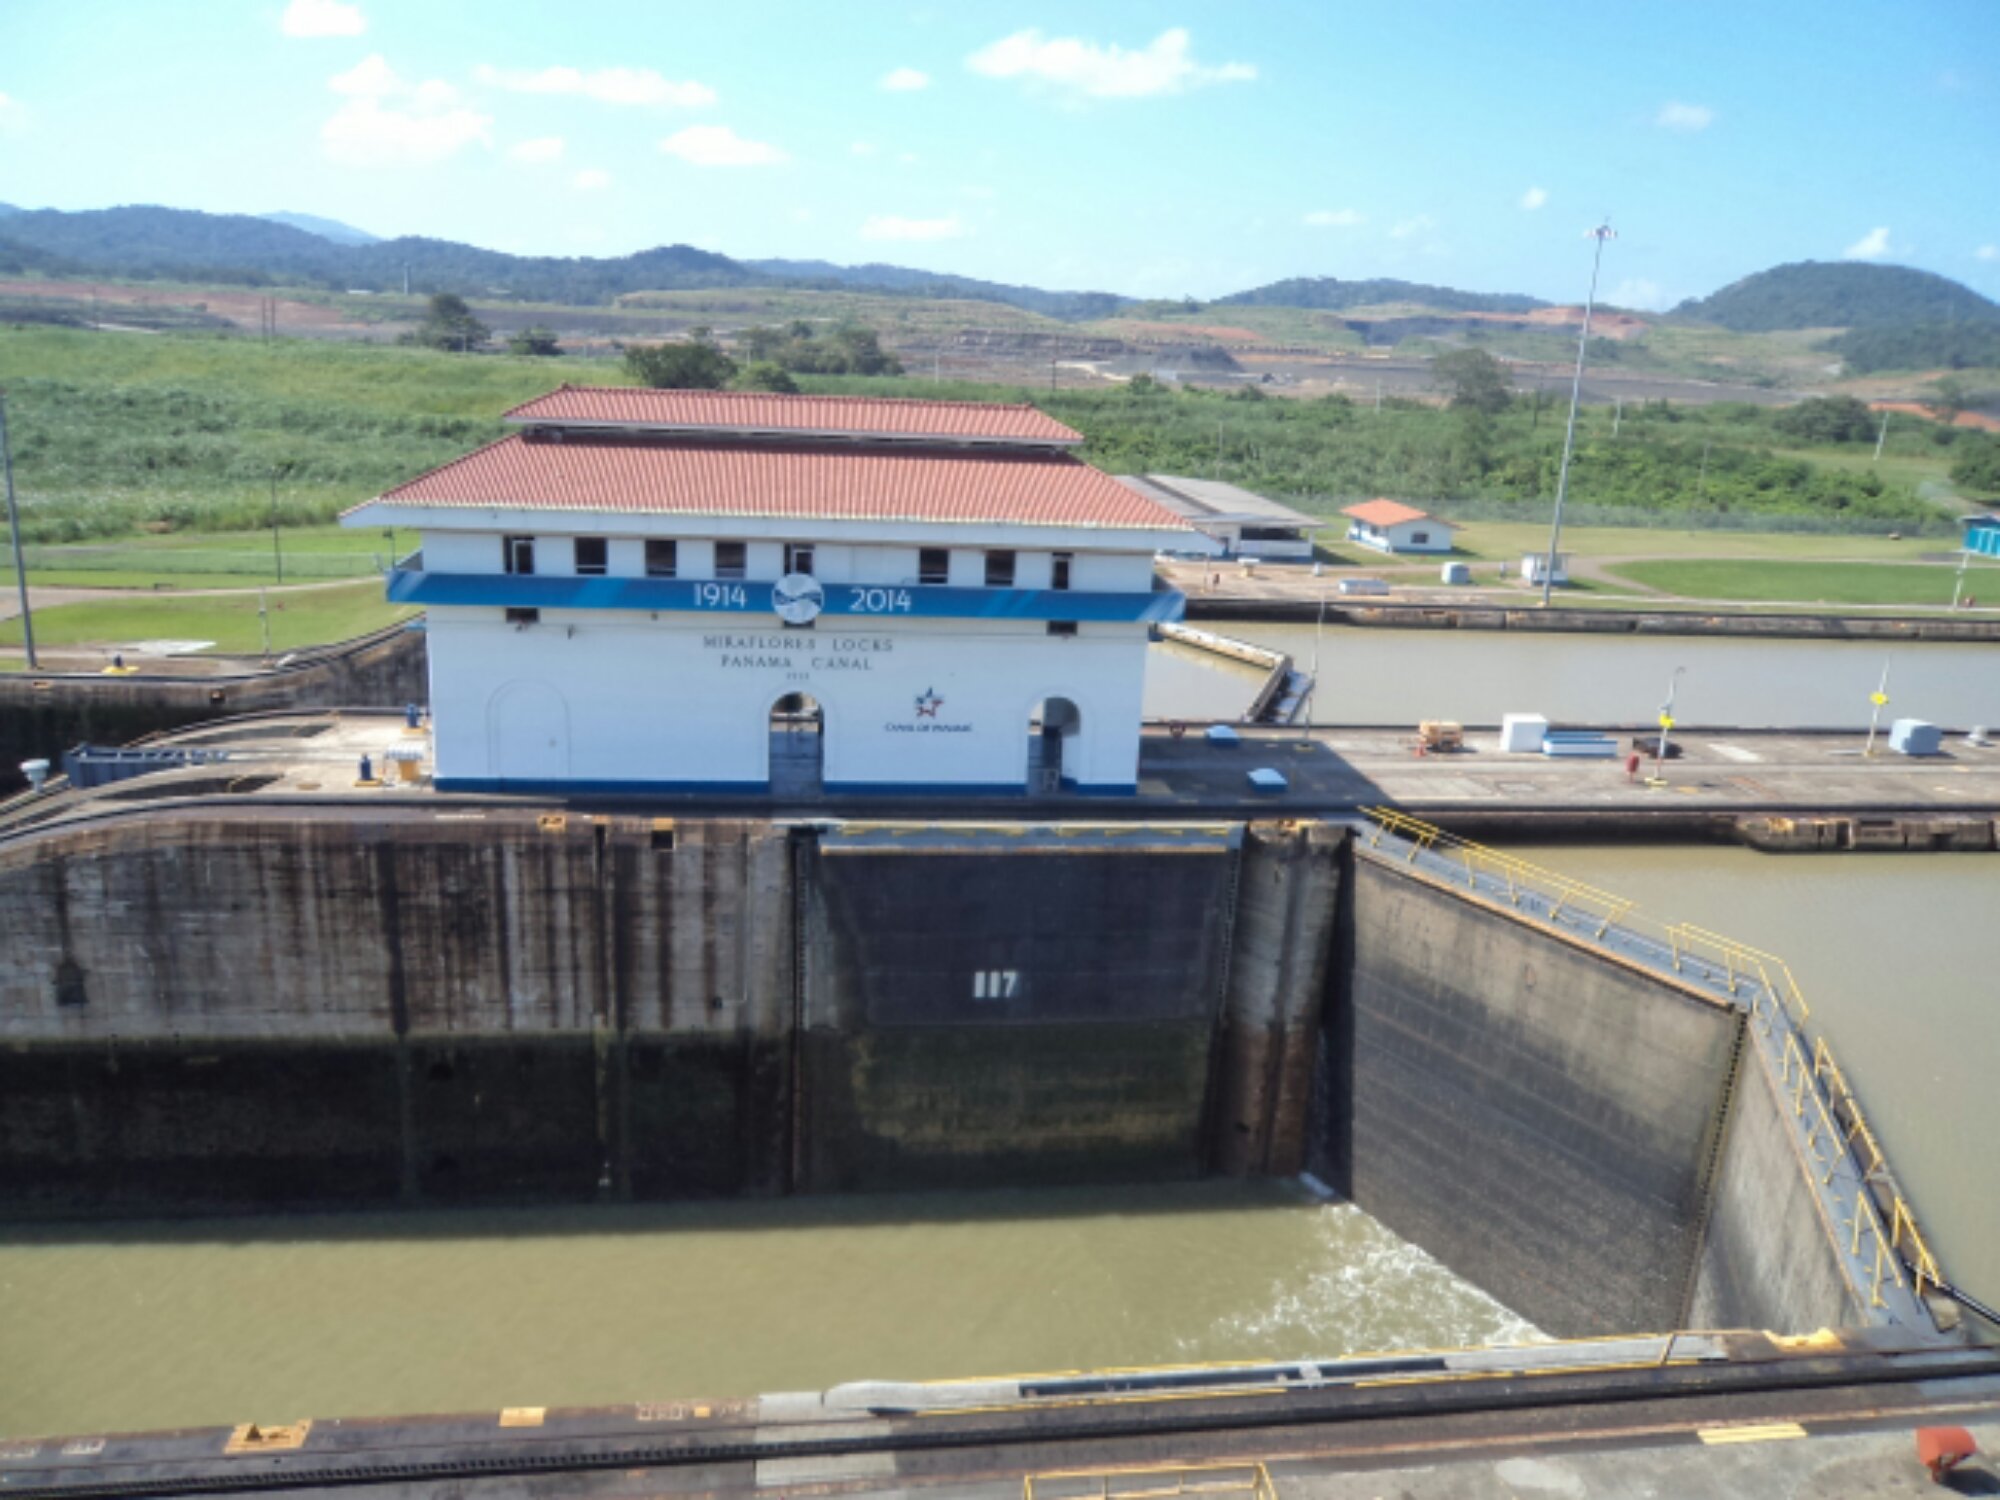 Canal do Panamá - Níveis diferentes e comportas fechadas